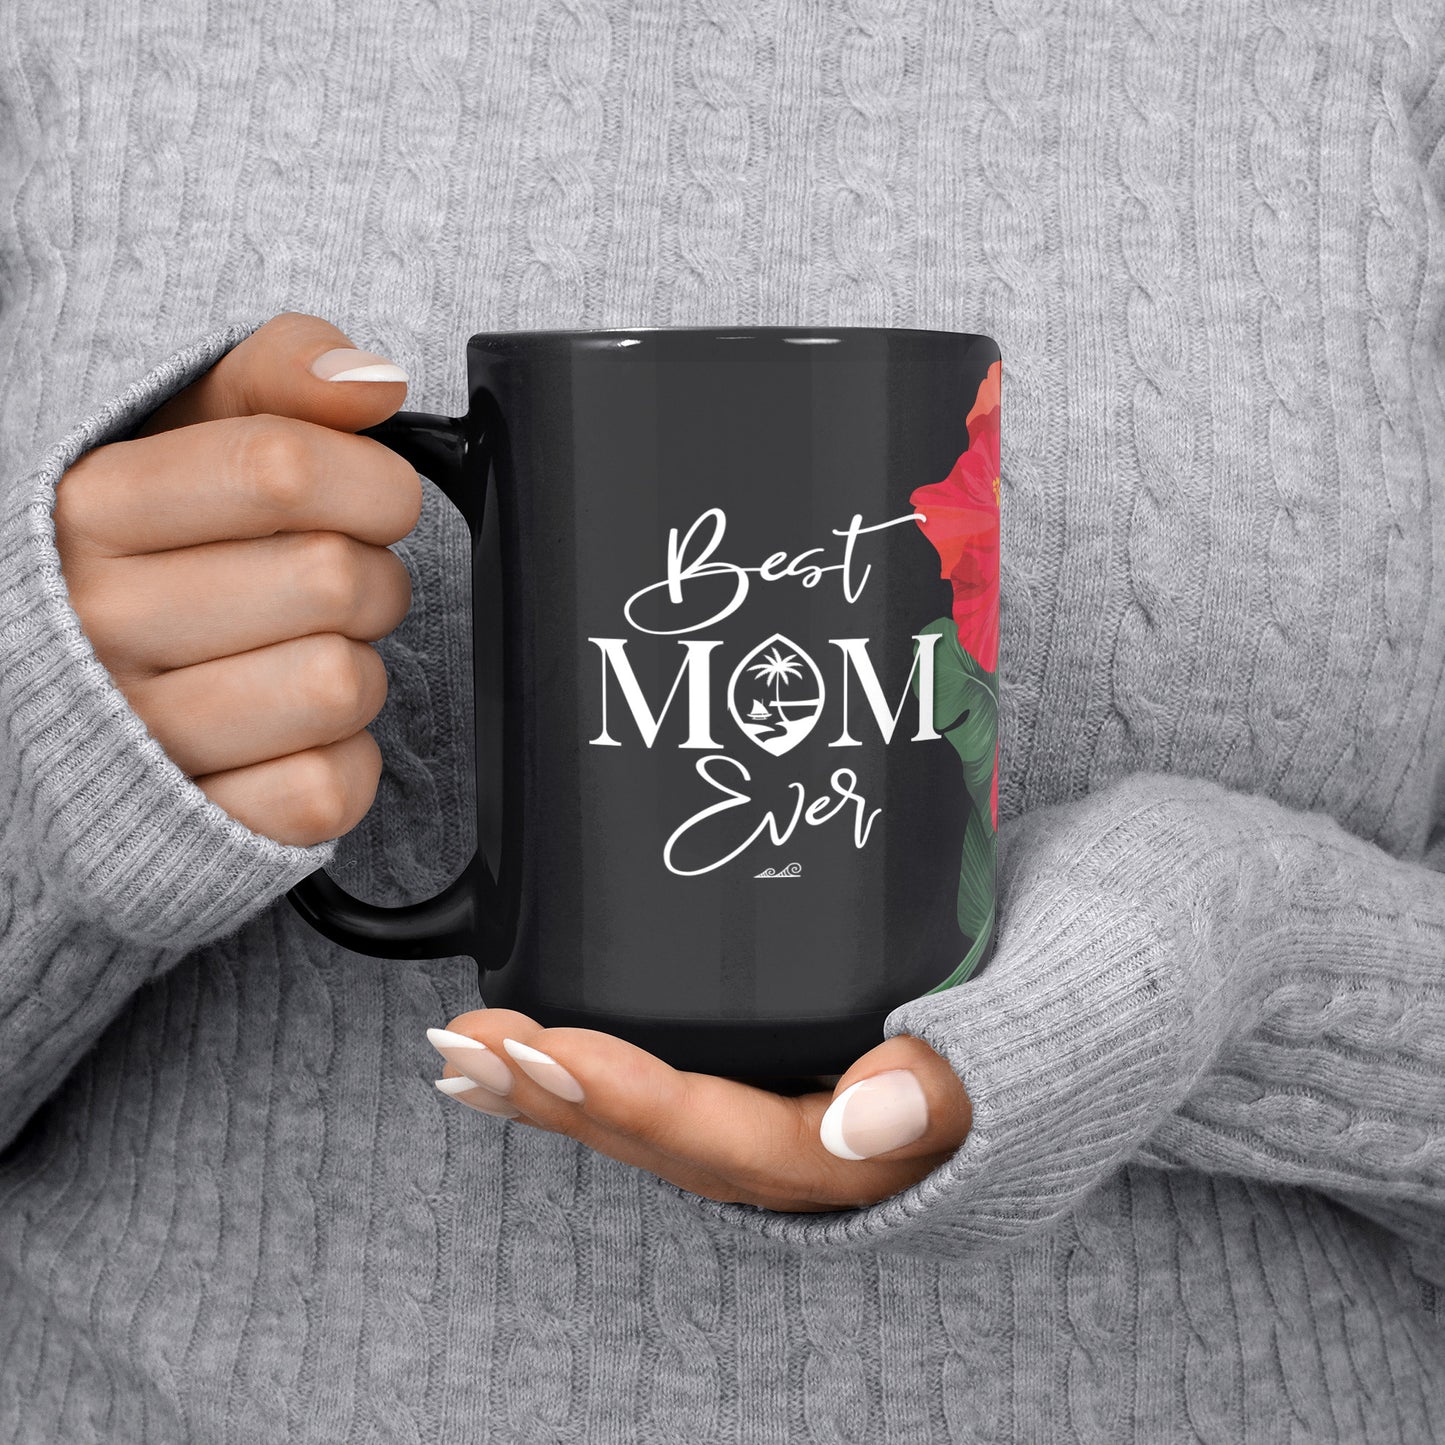 Best Mom Ever Script Guam Hibiscus Paradise Red 15oz Black Mug